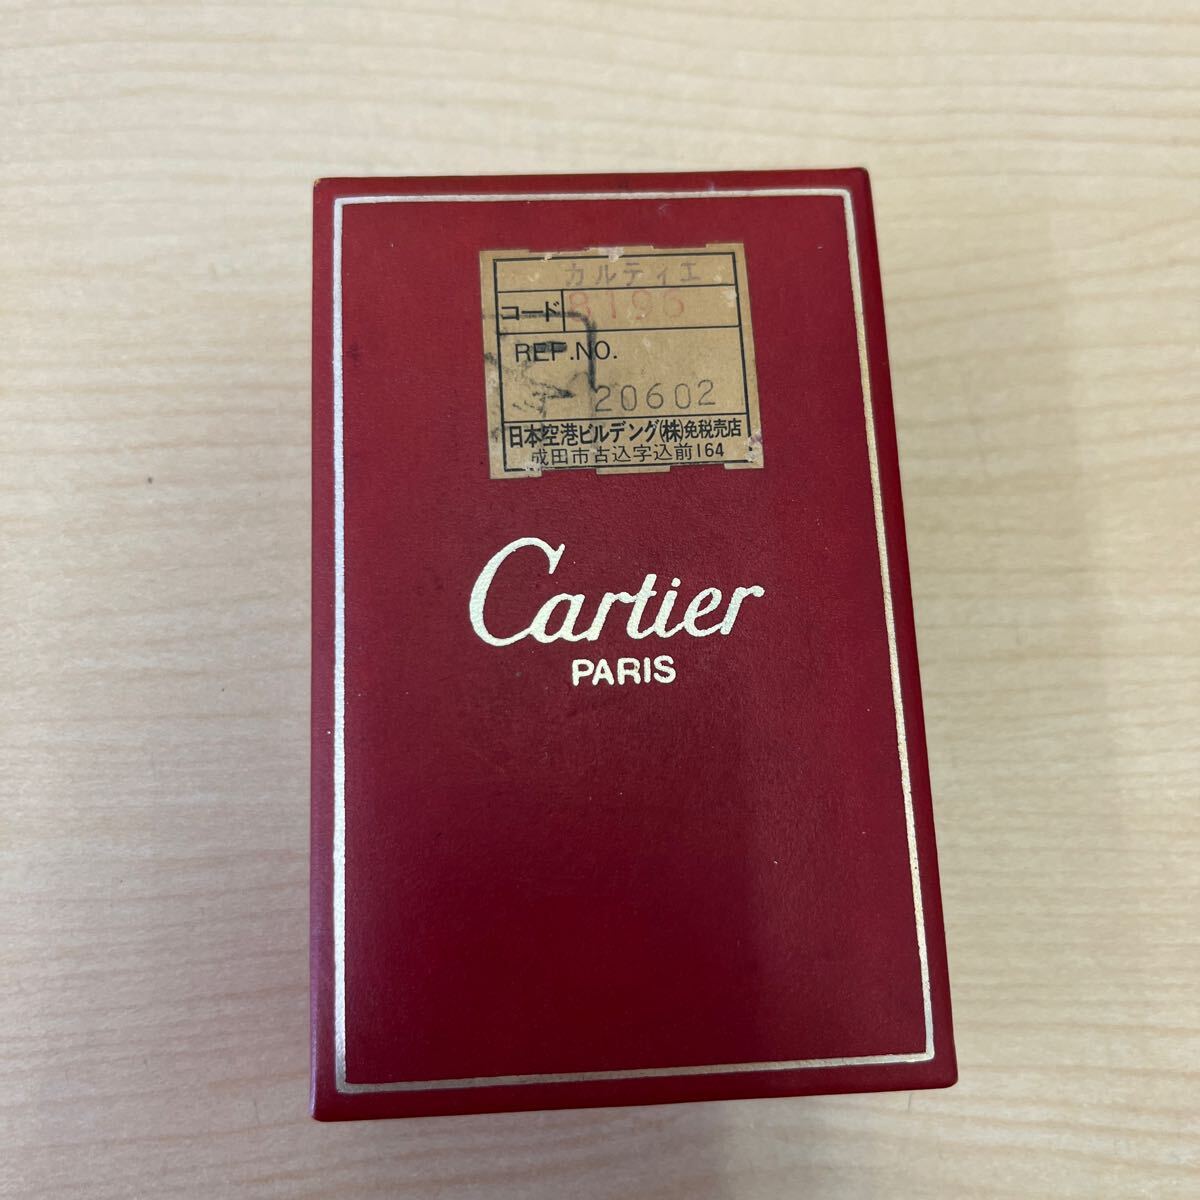 【T0427】Cartier カルティエ ライター 喫煙具 喫煙グッズ ケース付き 火打石 ボルドーカラー 着火未確認_画像10